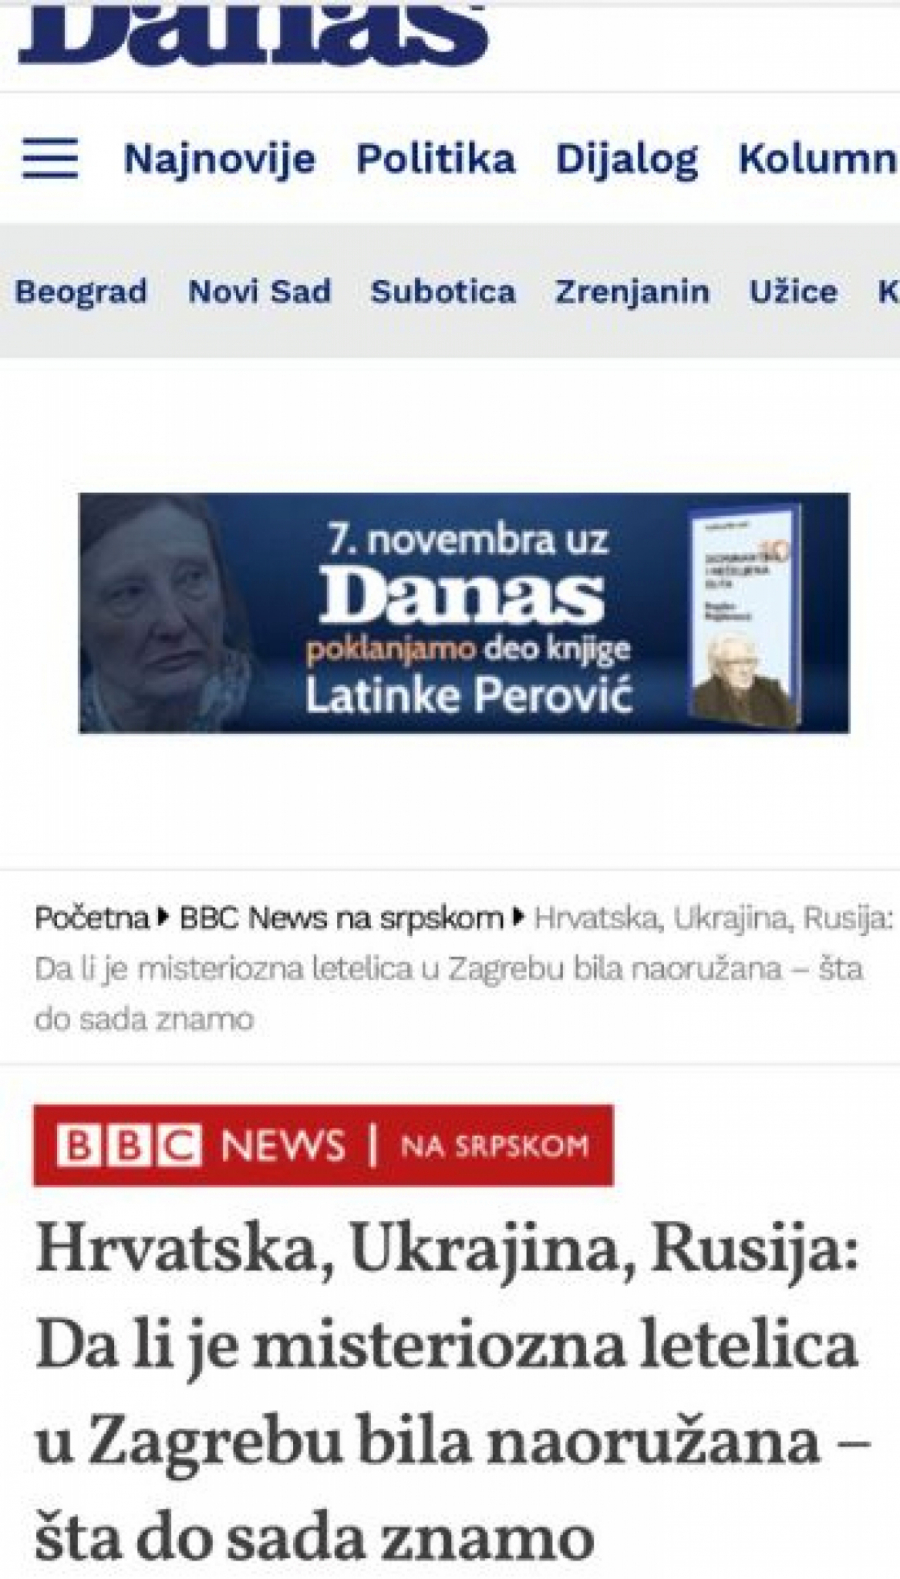 LICEMERJE BEZ PREMCA! Evo kako tajkunski medij izvrće informacije i podvaljuje građanima Srbije!